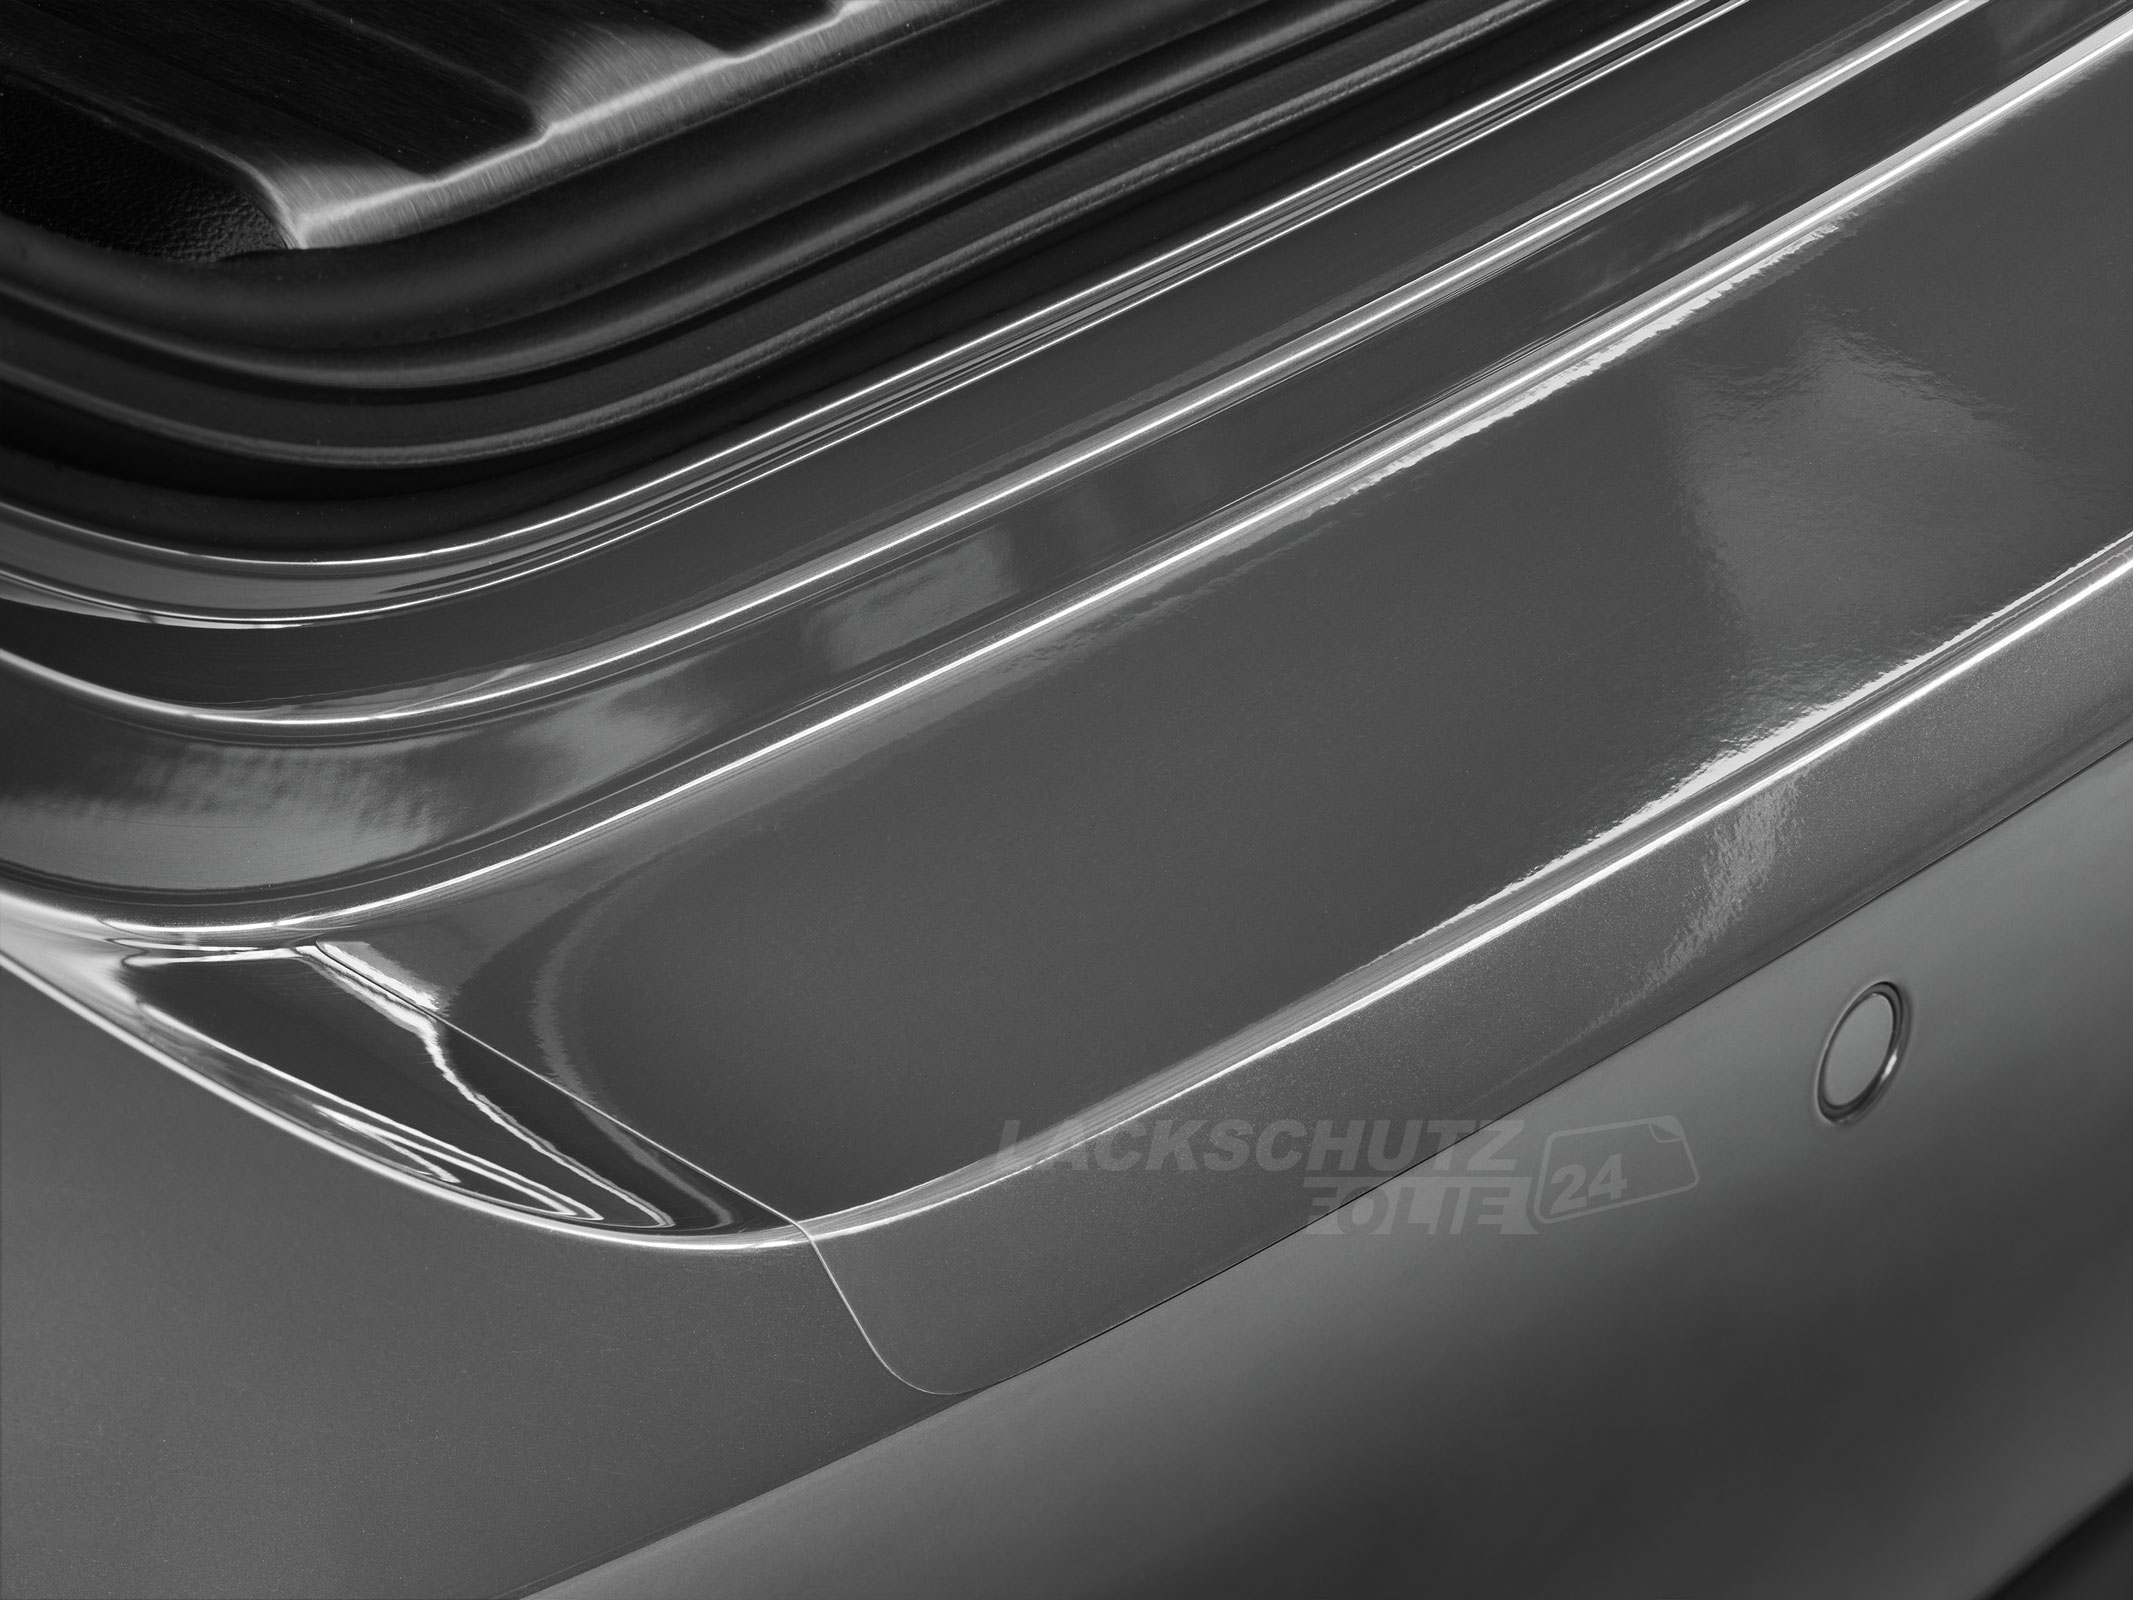 Ladekantenschutzfolie - Transparent Glatt Hochglänzend für Suzuki Swace ab BJ 11/2020